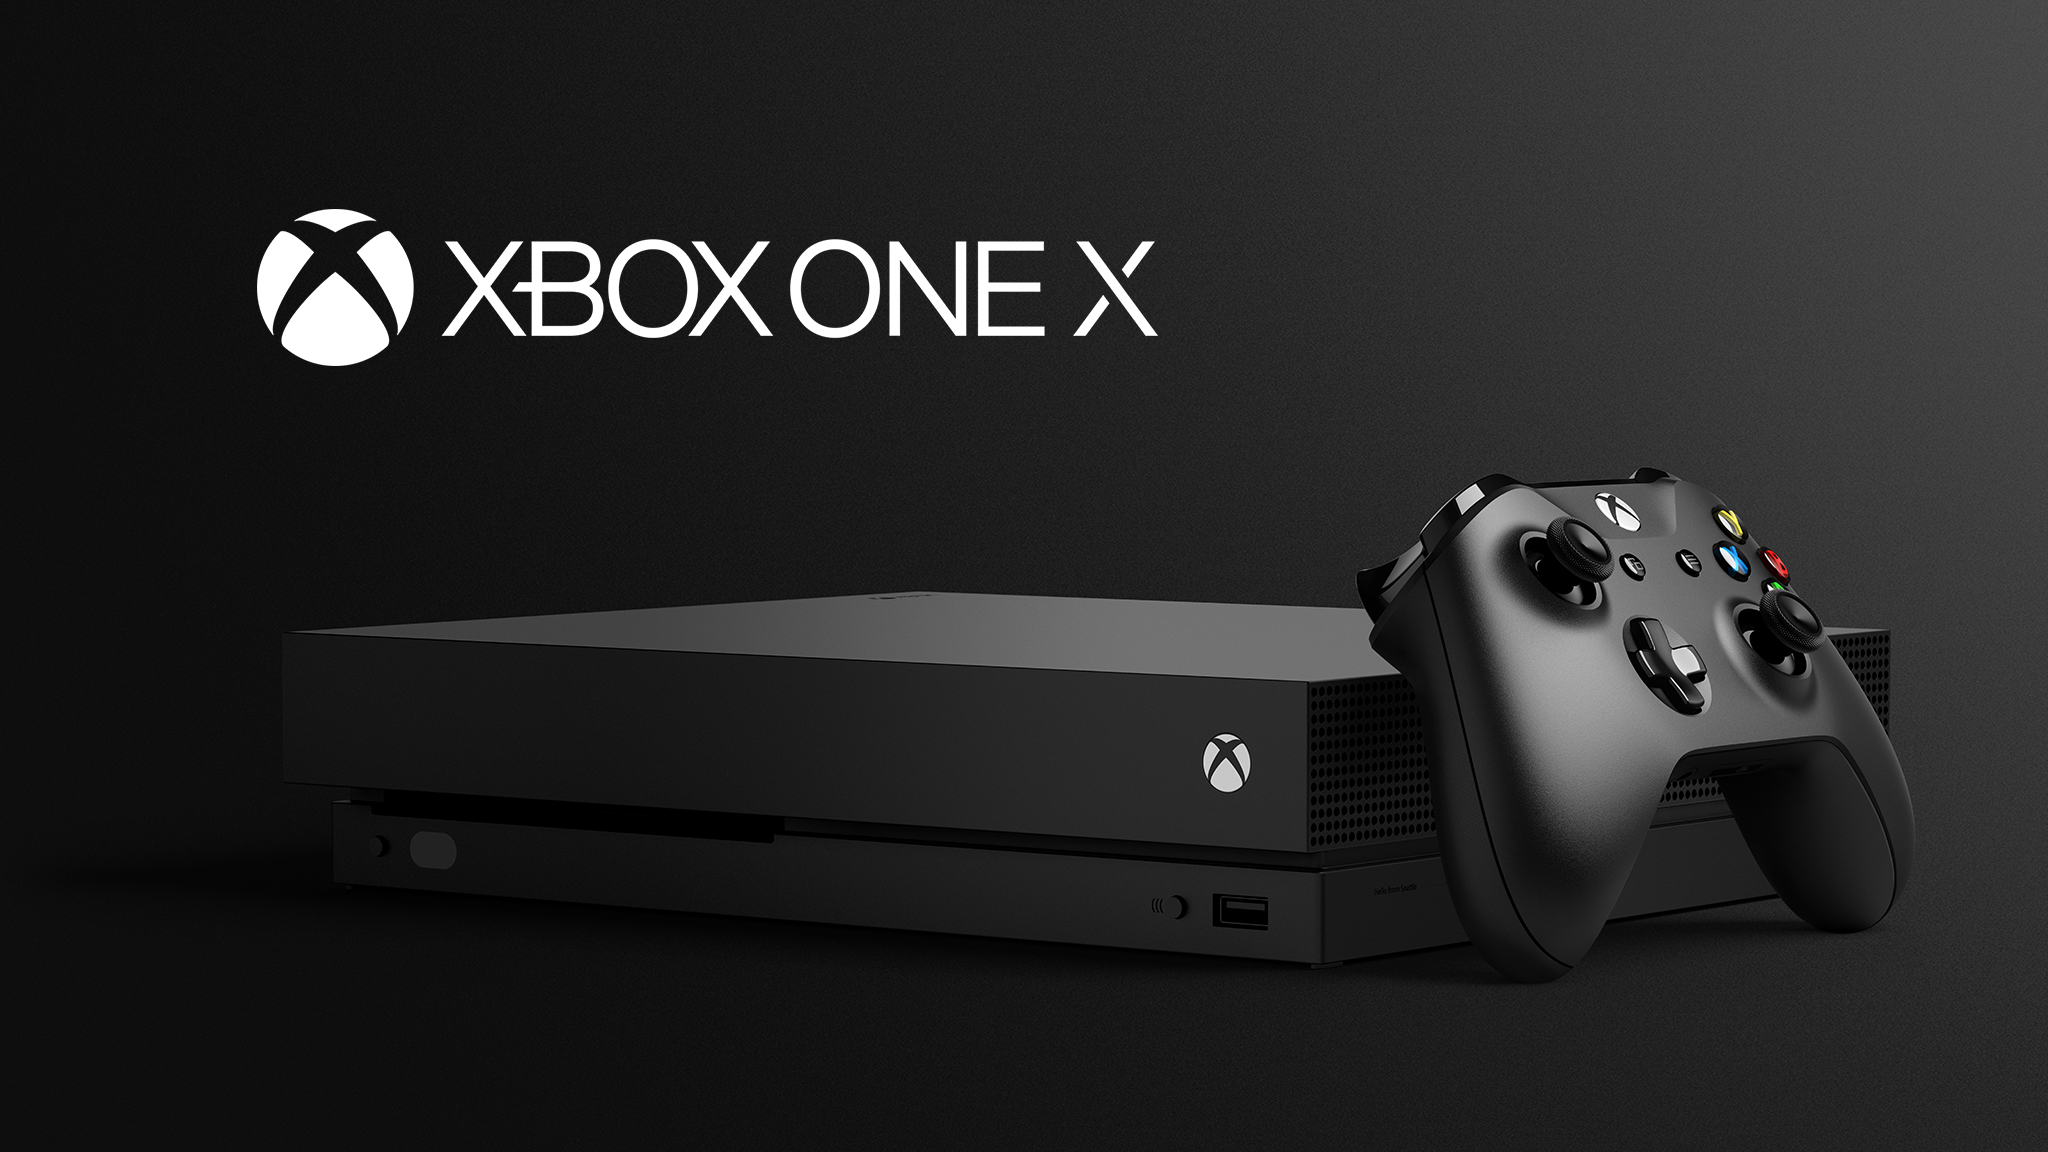 Xbox One X console - một trong những chiếc máy chơi game với sức mạnh đáng kinh ngạc. Với bộ xử lý 8 nhân và độ phân giải 4K, bạn sẽ được trải nghiệm một không gian chơi game đầy ấn tượng và tuyệt vời hơn bao giờ hết.